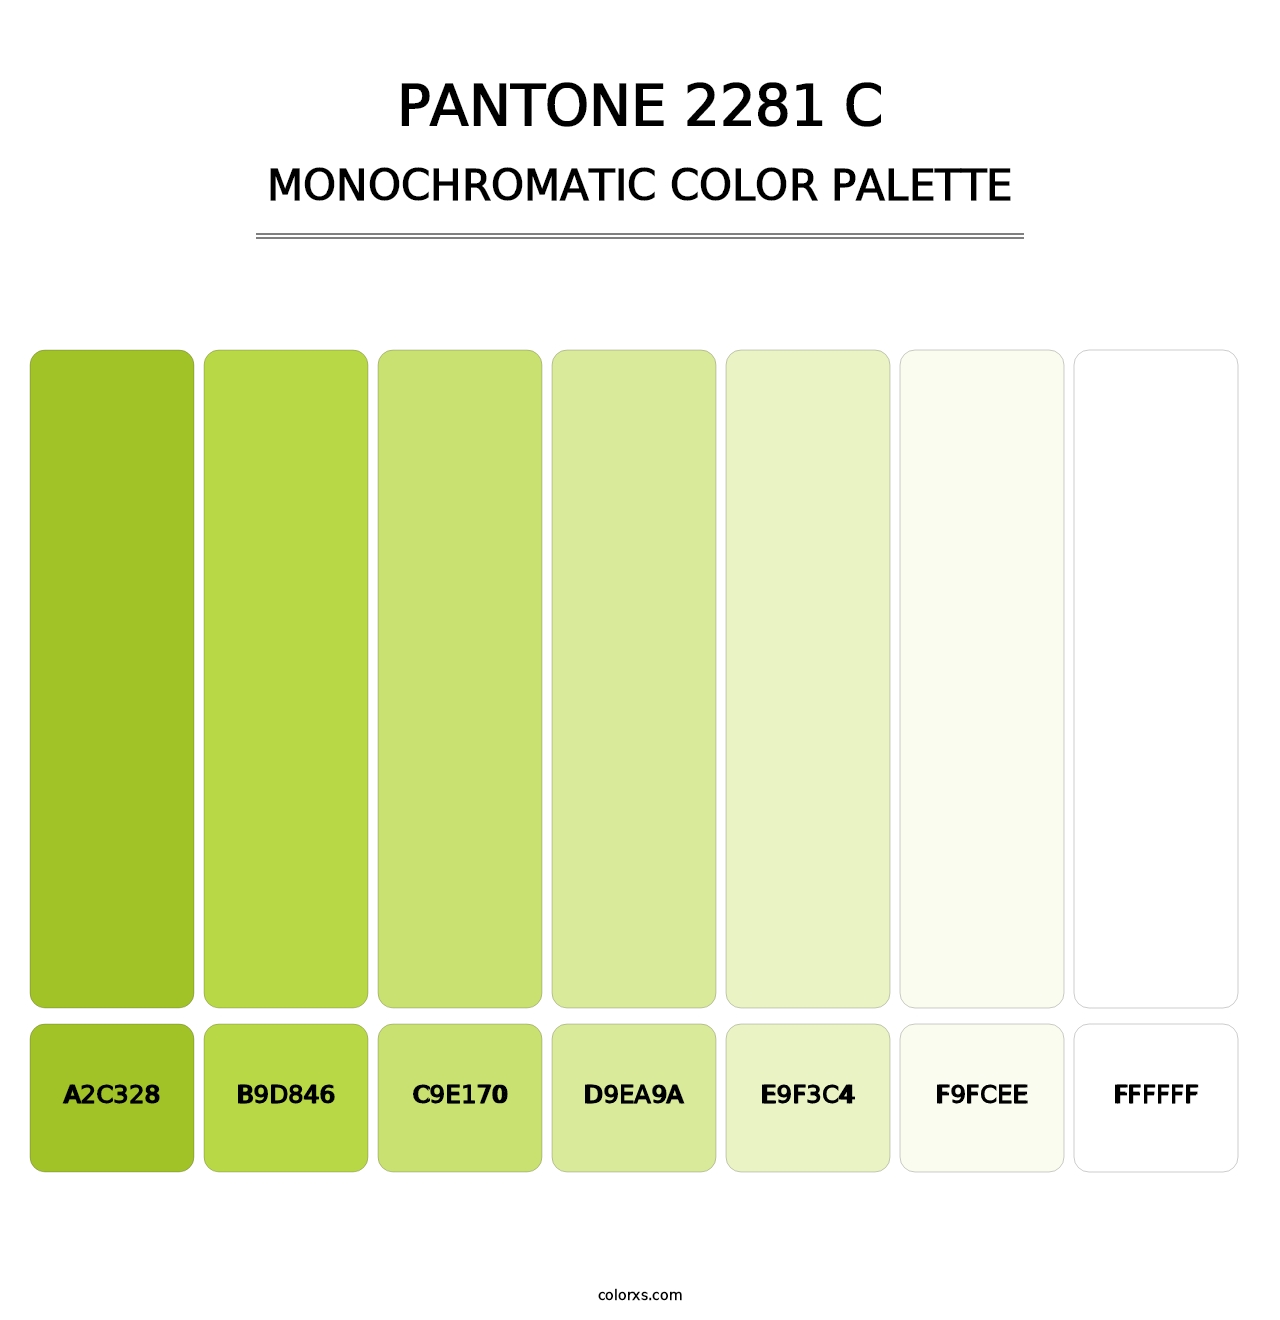 PANTONE 2281 C - Monochromatic Color Palette